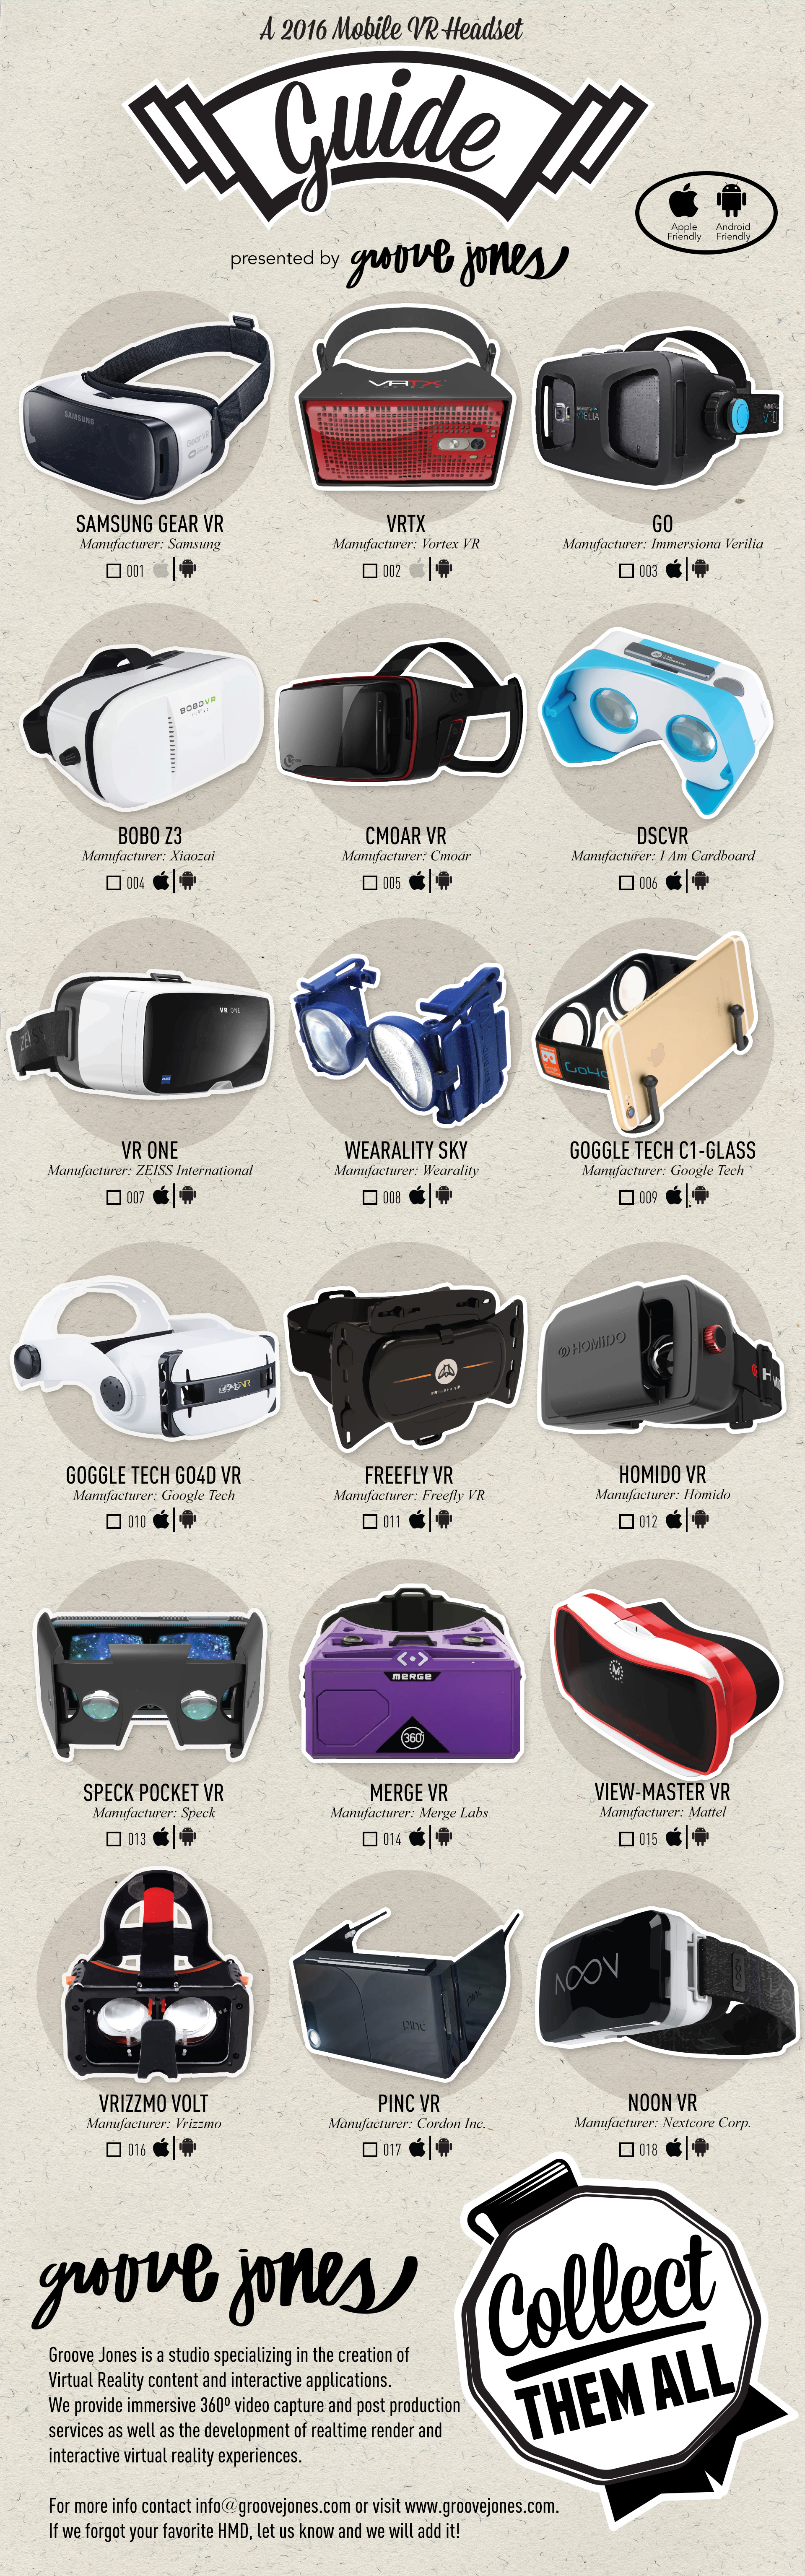 Groove Jones - Mobile VR Headset Checklist